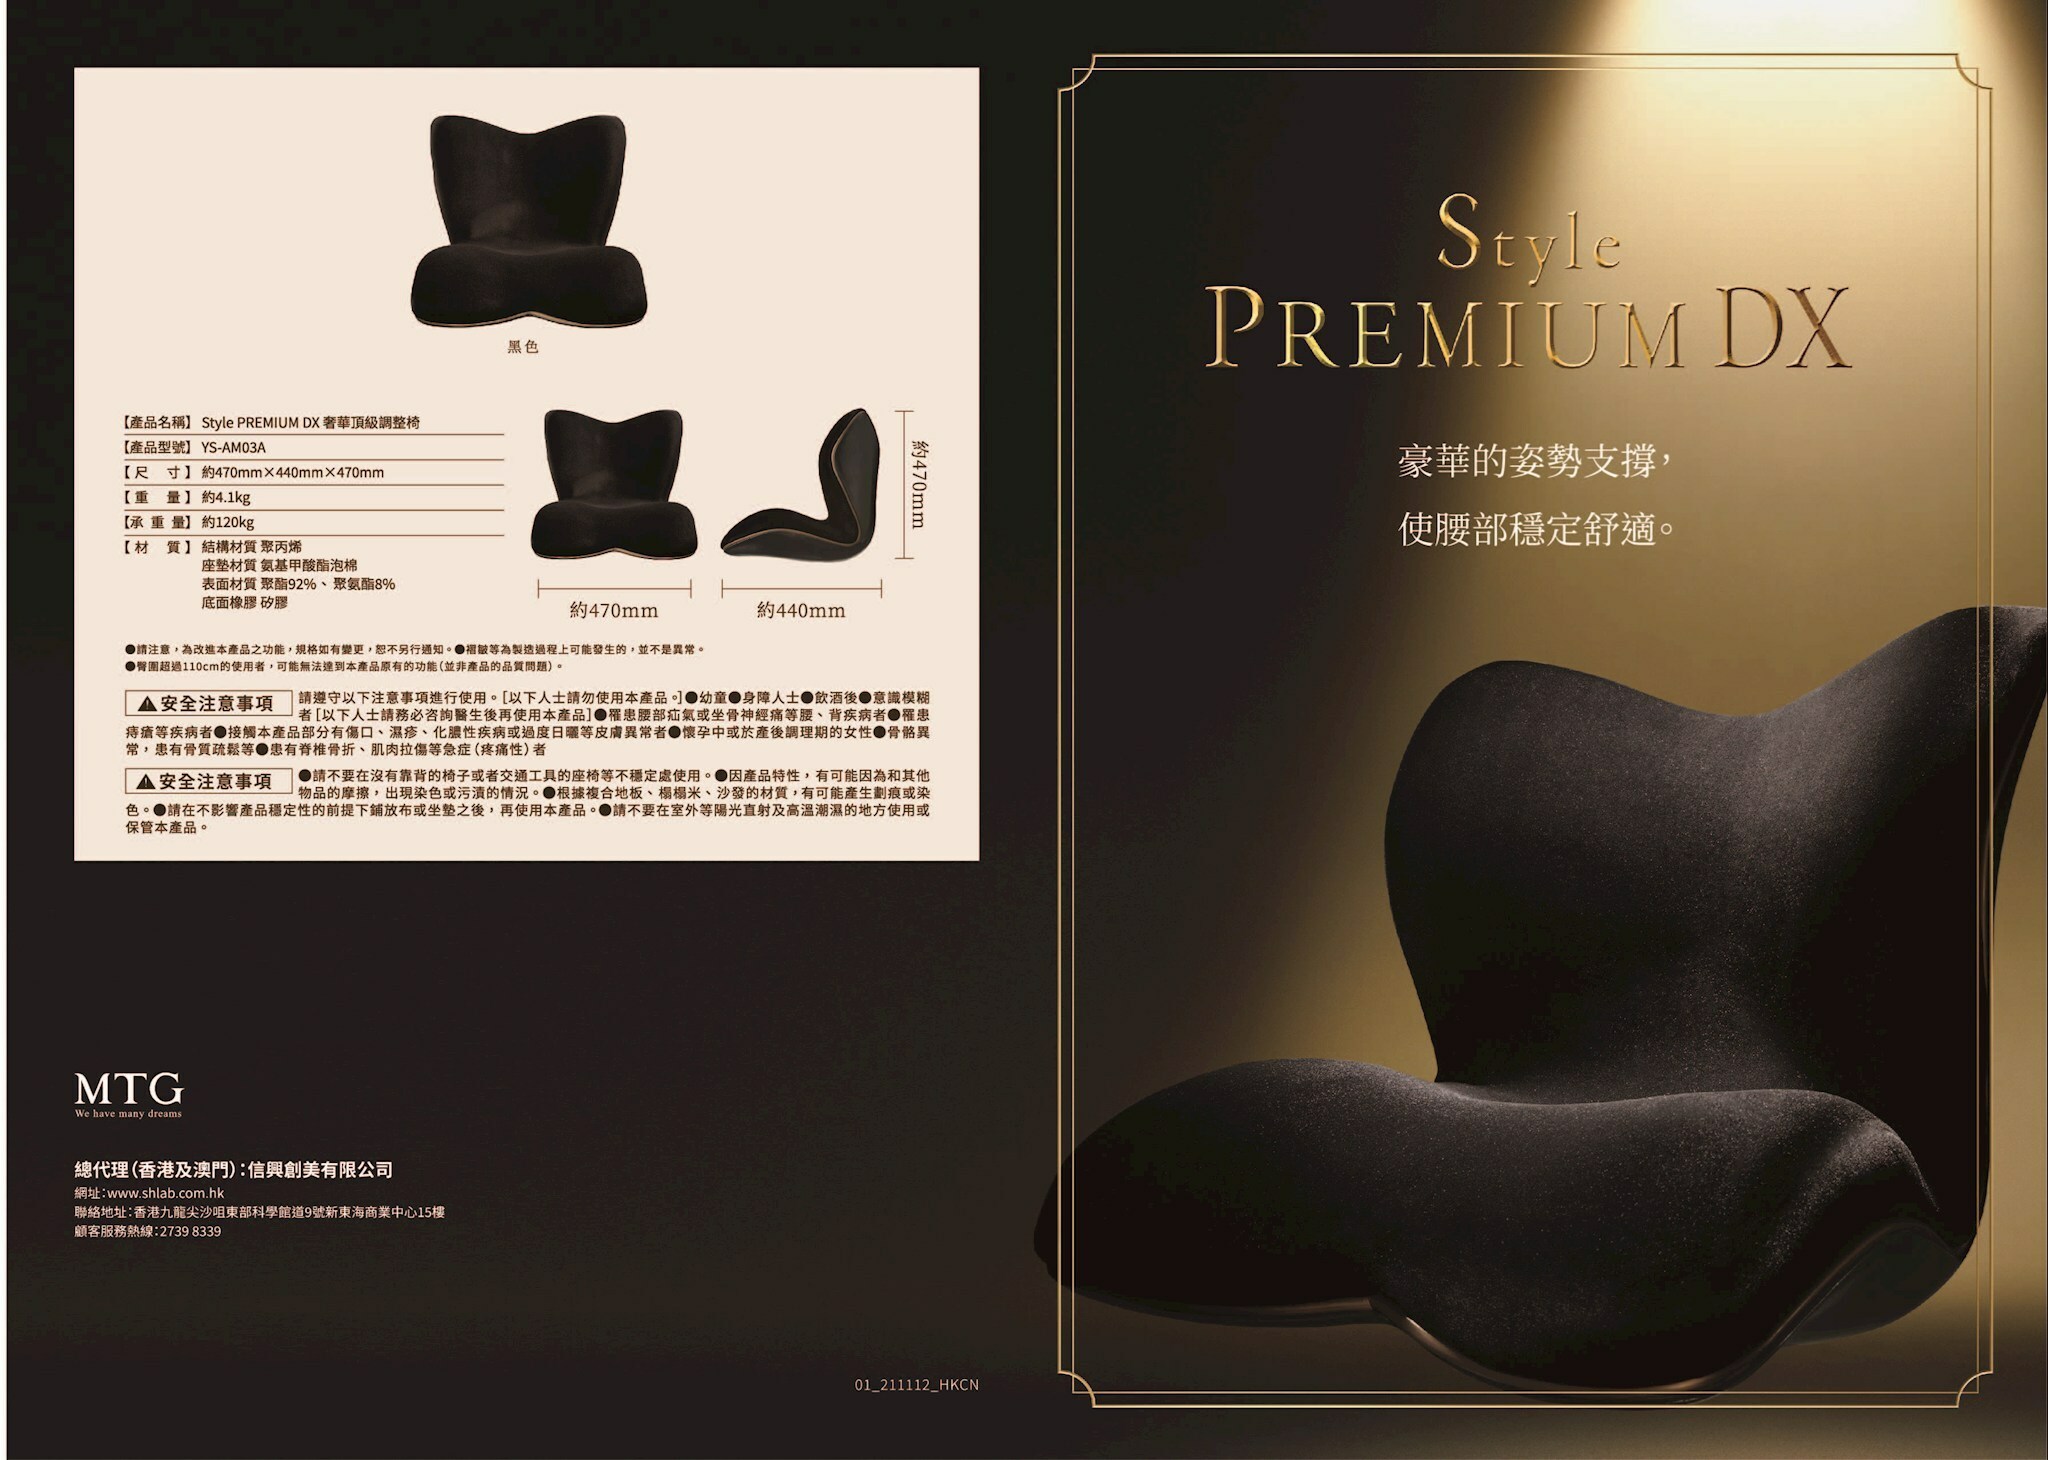 MTG Style PREMIUM DX スタイル プレミアム デラックス 姿勢 - 座椅子